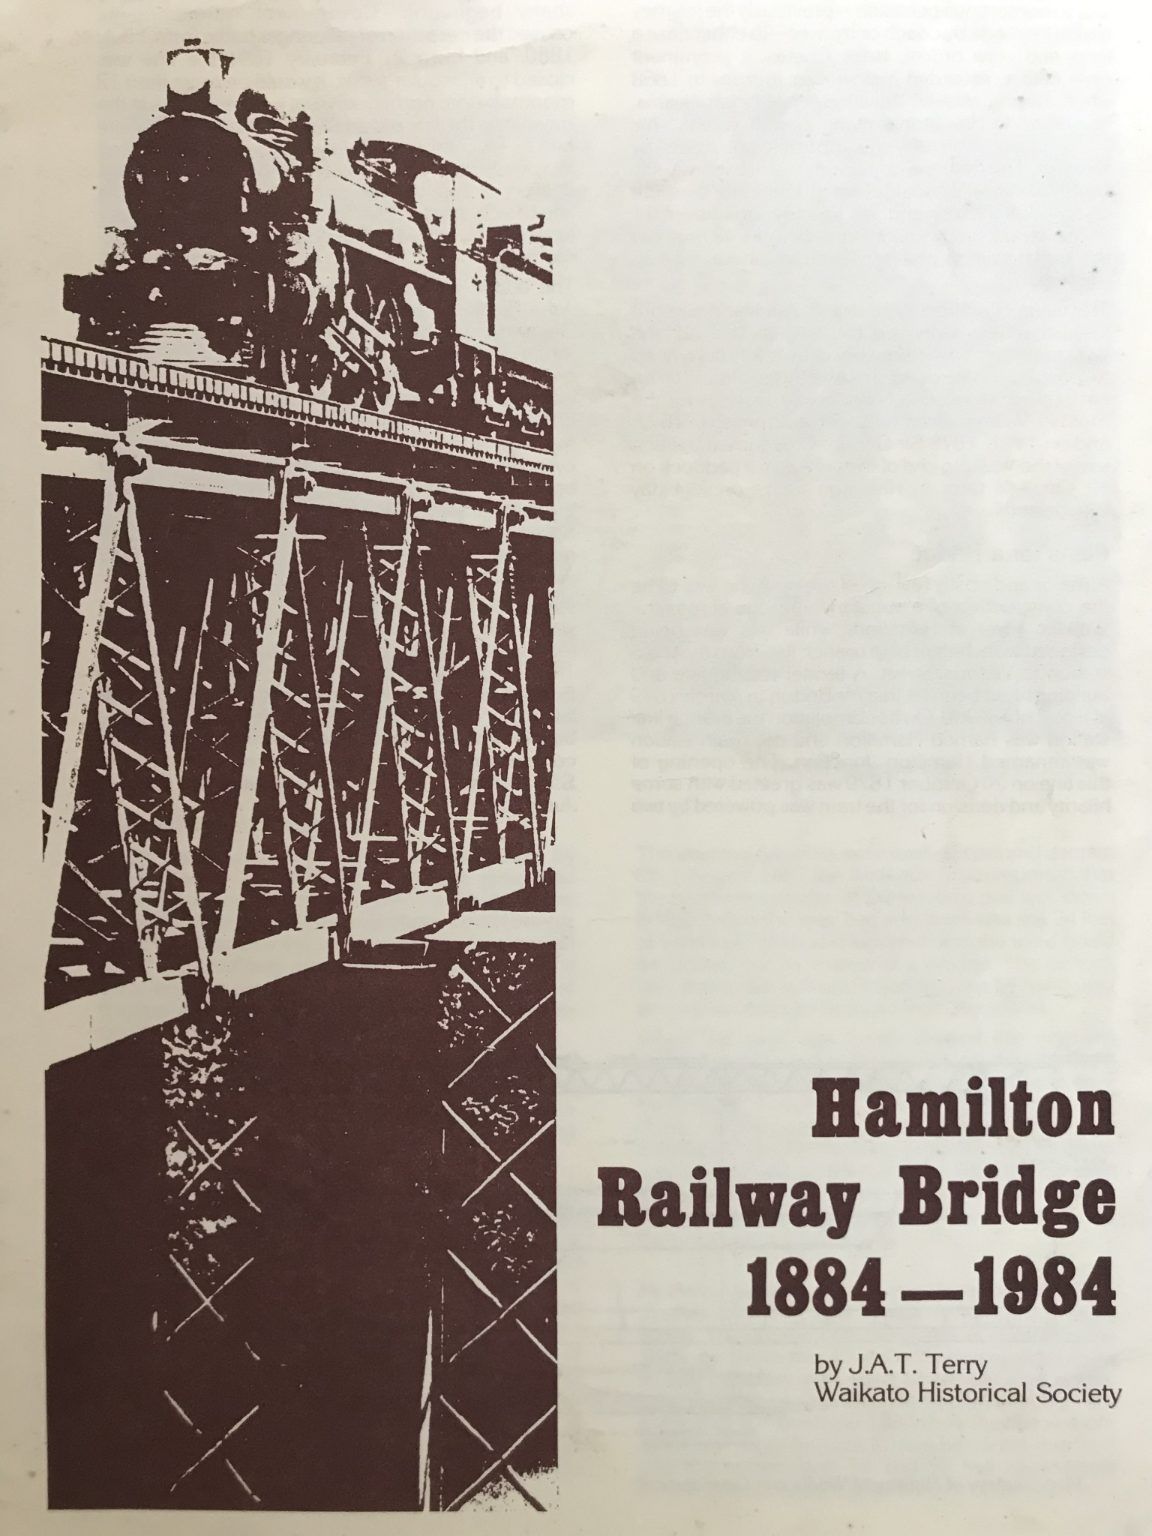 HAMILTON RAILWAY BRIDGE 1884 - 1984